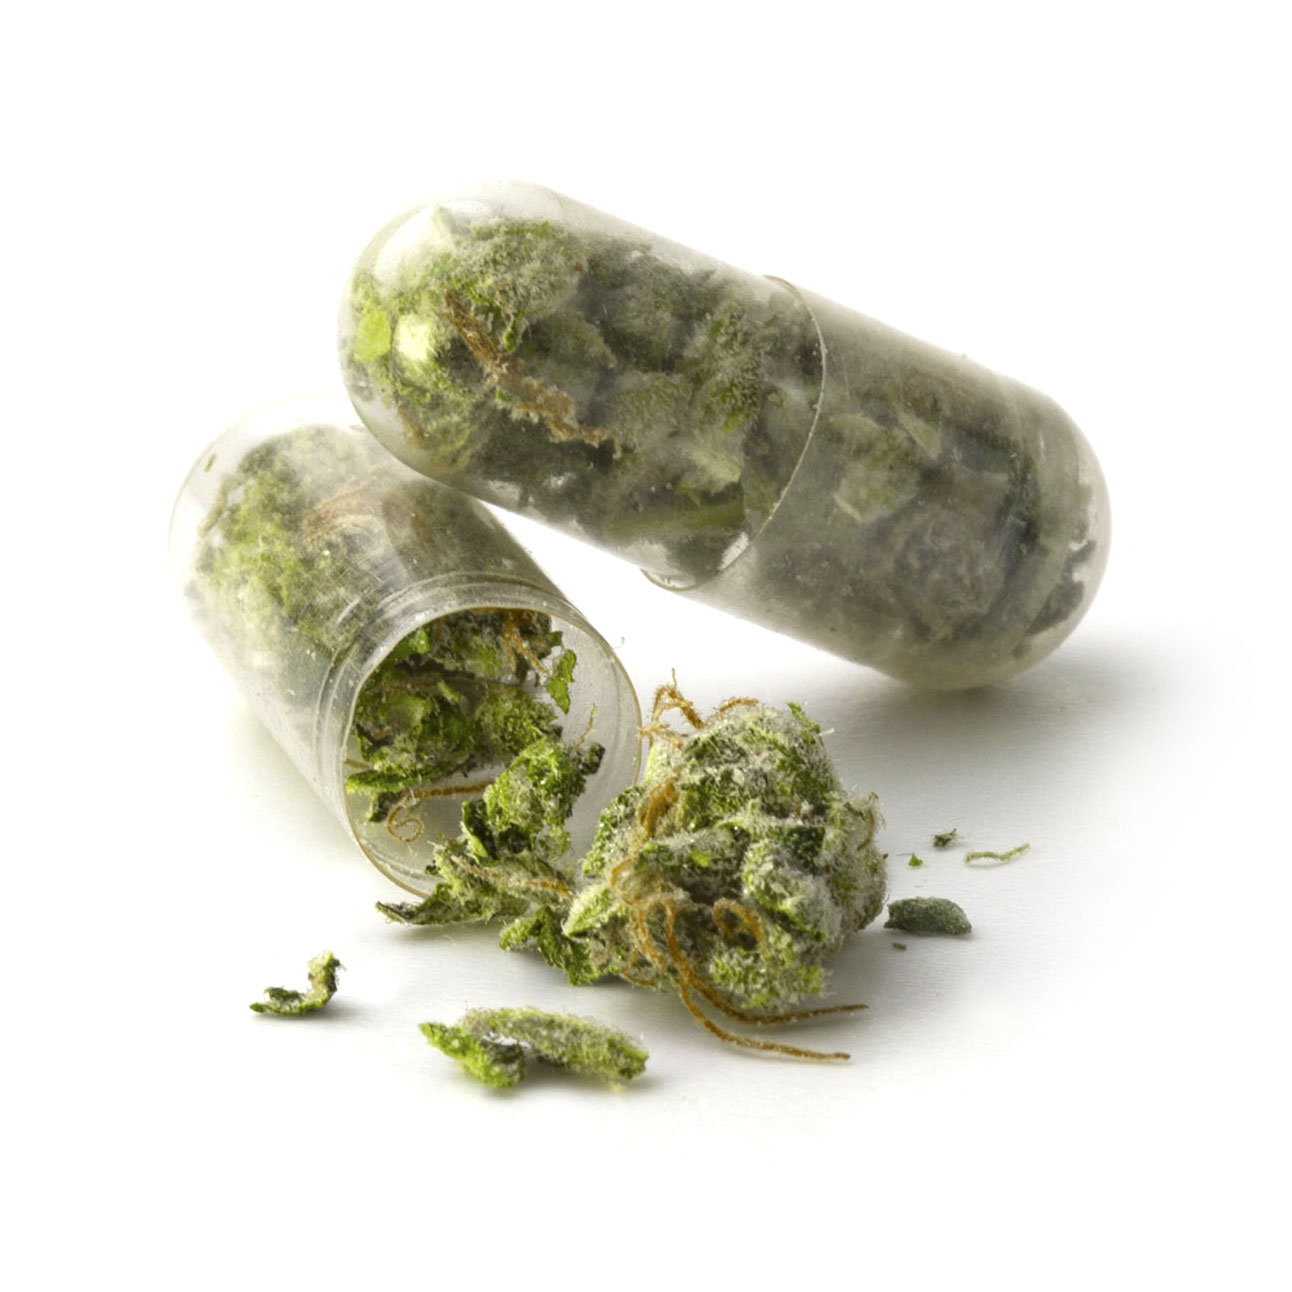 Medical marijuana extract